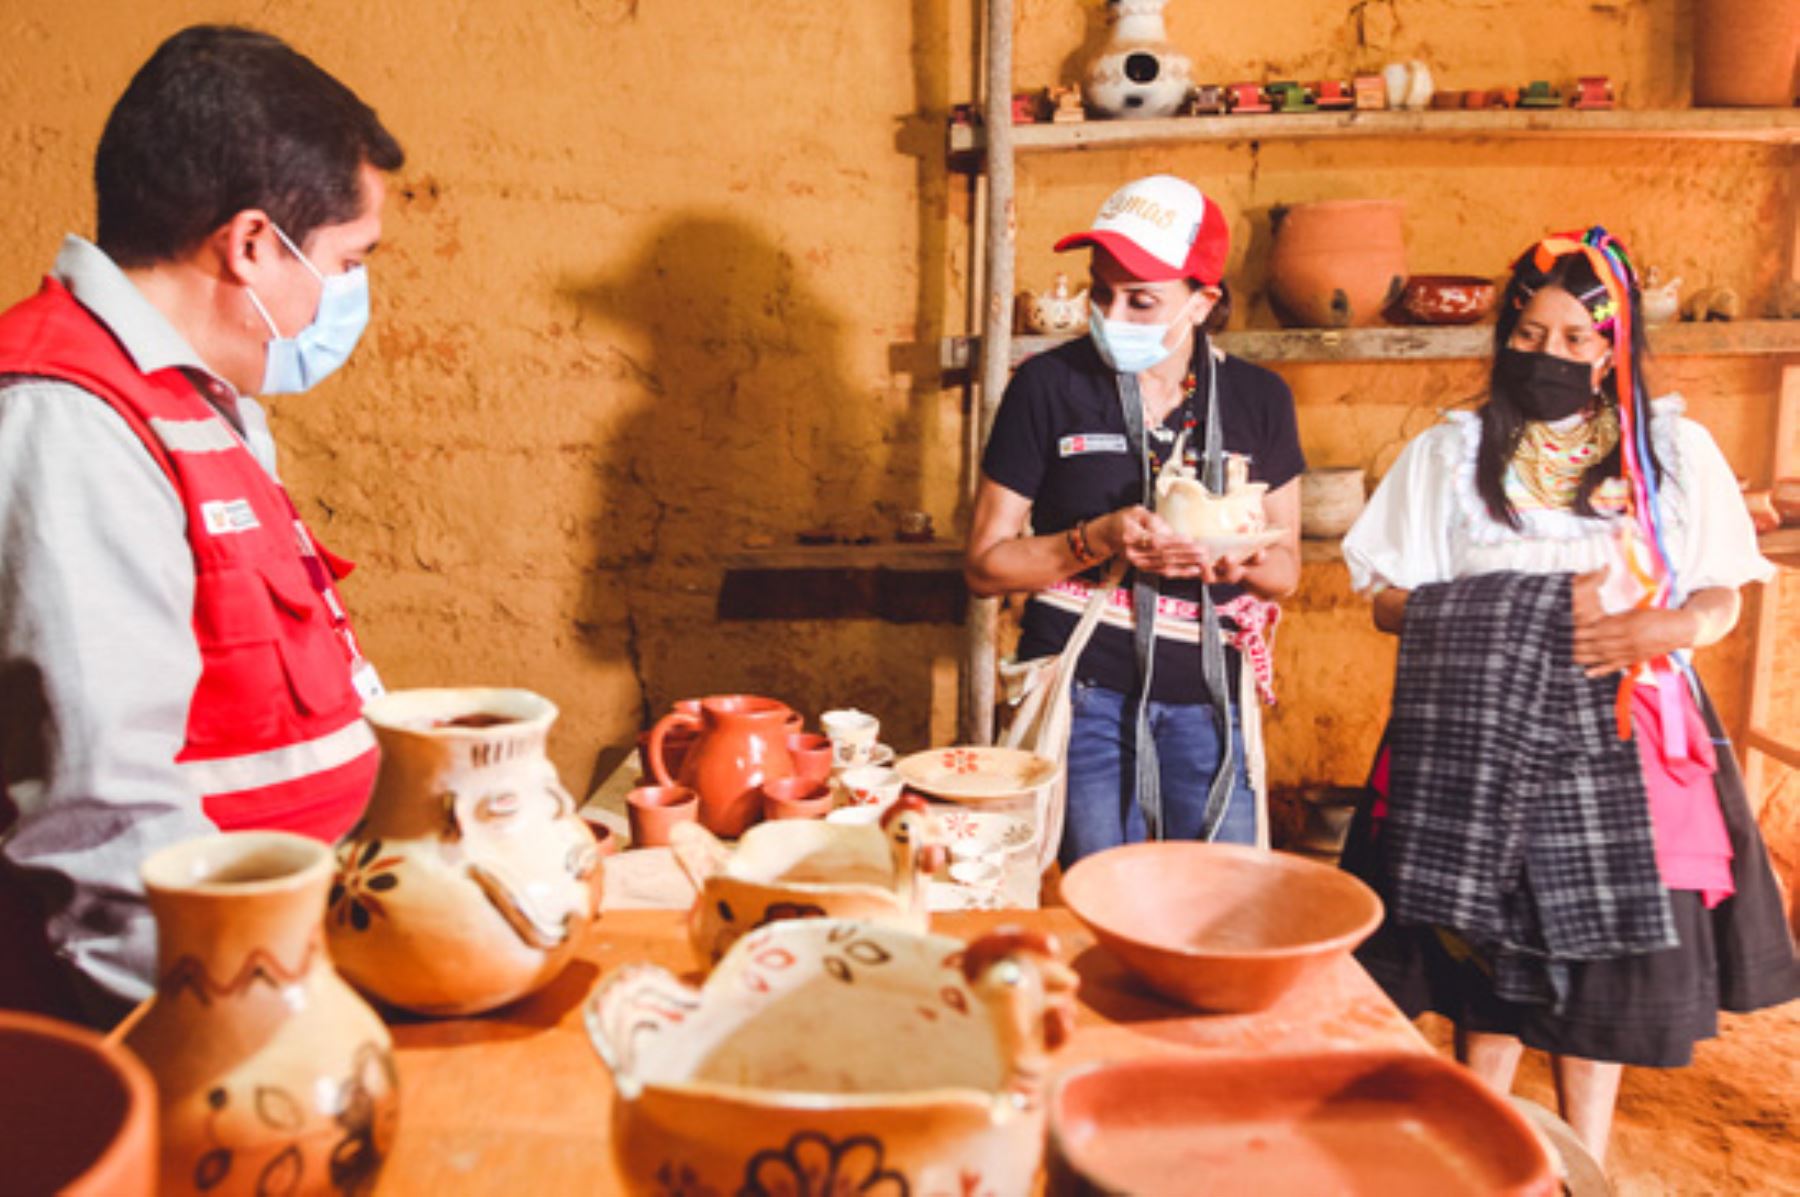 La ministra Patricia Donayre estuvo en Lamas, región San Martín, donde visitó el comedor popular Llackta Amachakuna, en el centro poblado de la comunidad Kechwa Wayku. Foto: ANDINA/Midis